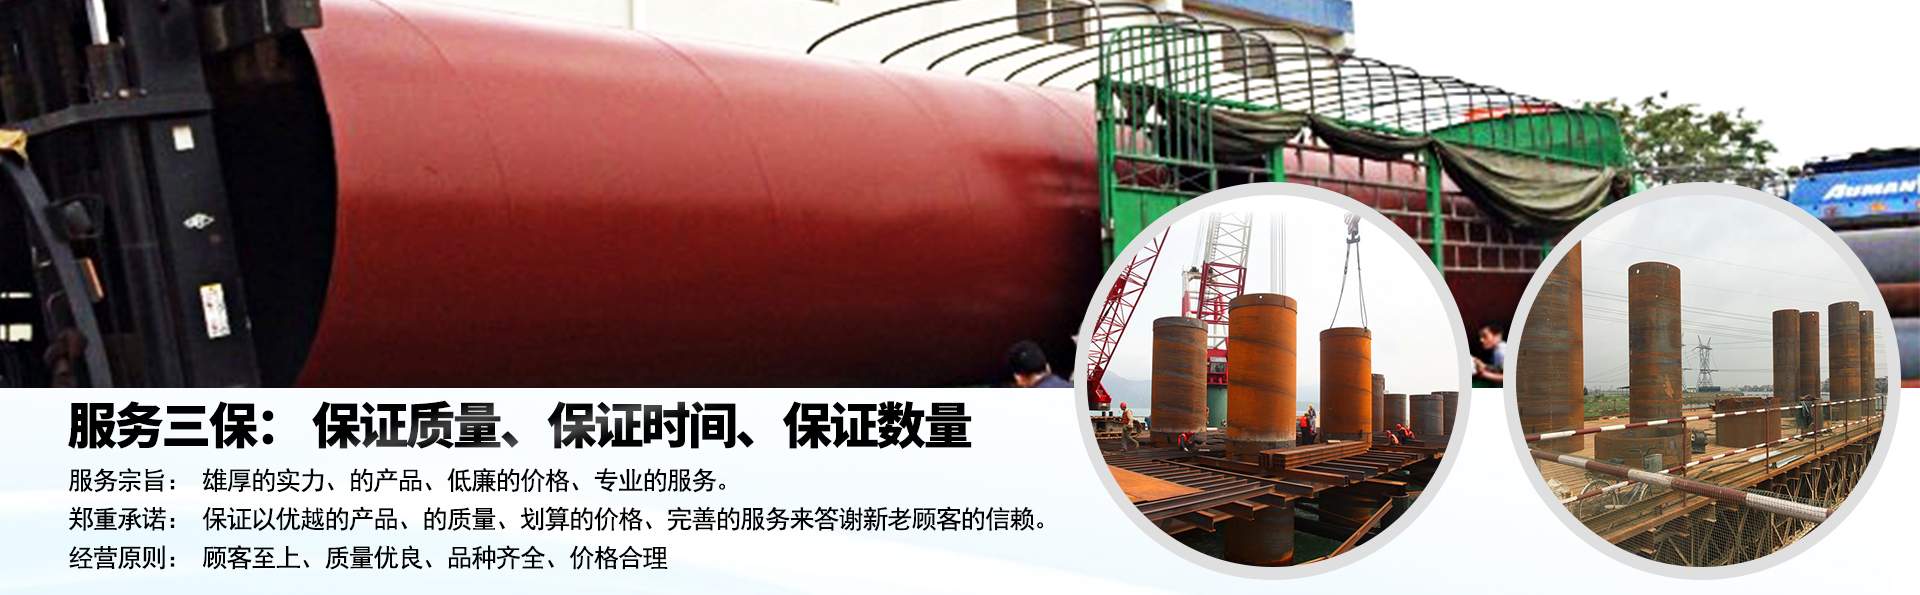 钢护筒重量计算 湛江钢护筒生产厂家 1350 800 850 900型号钢护筒